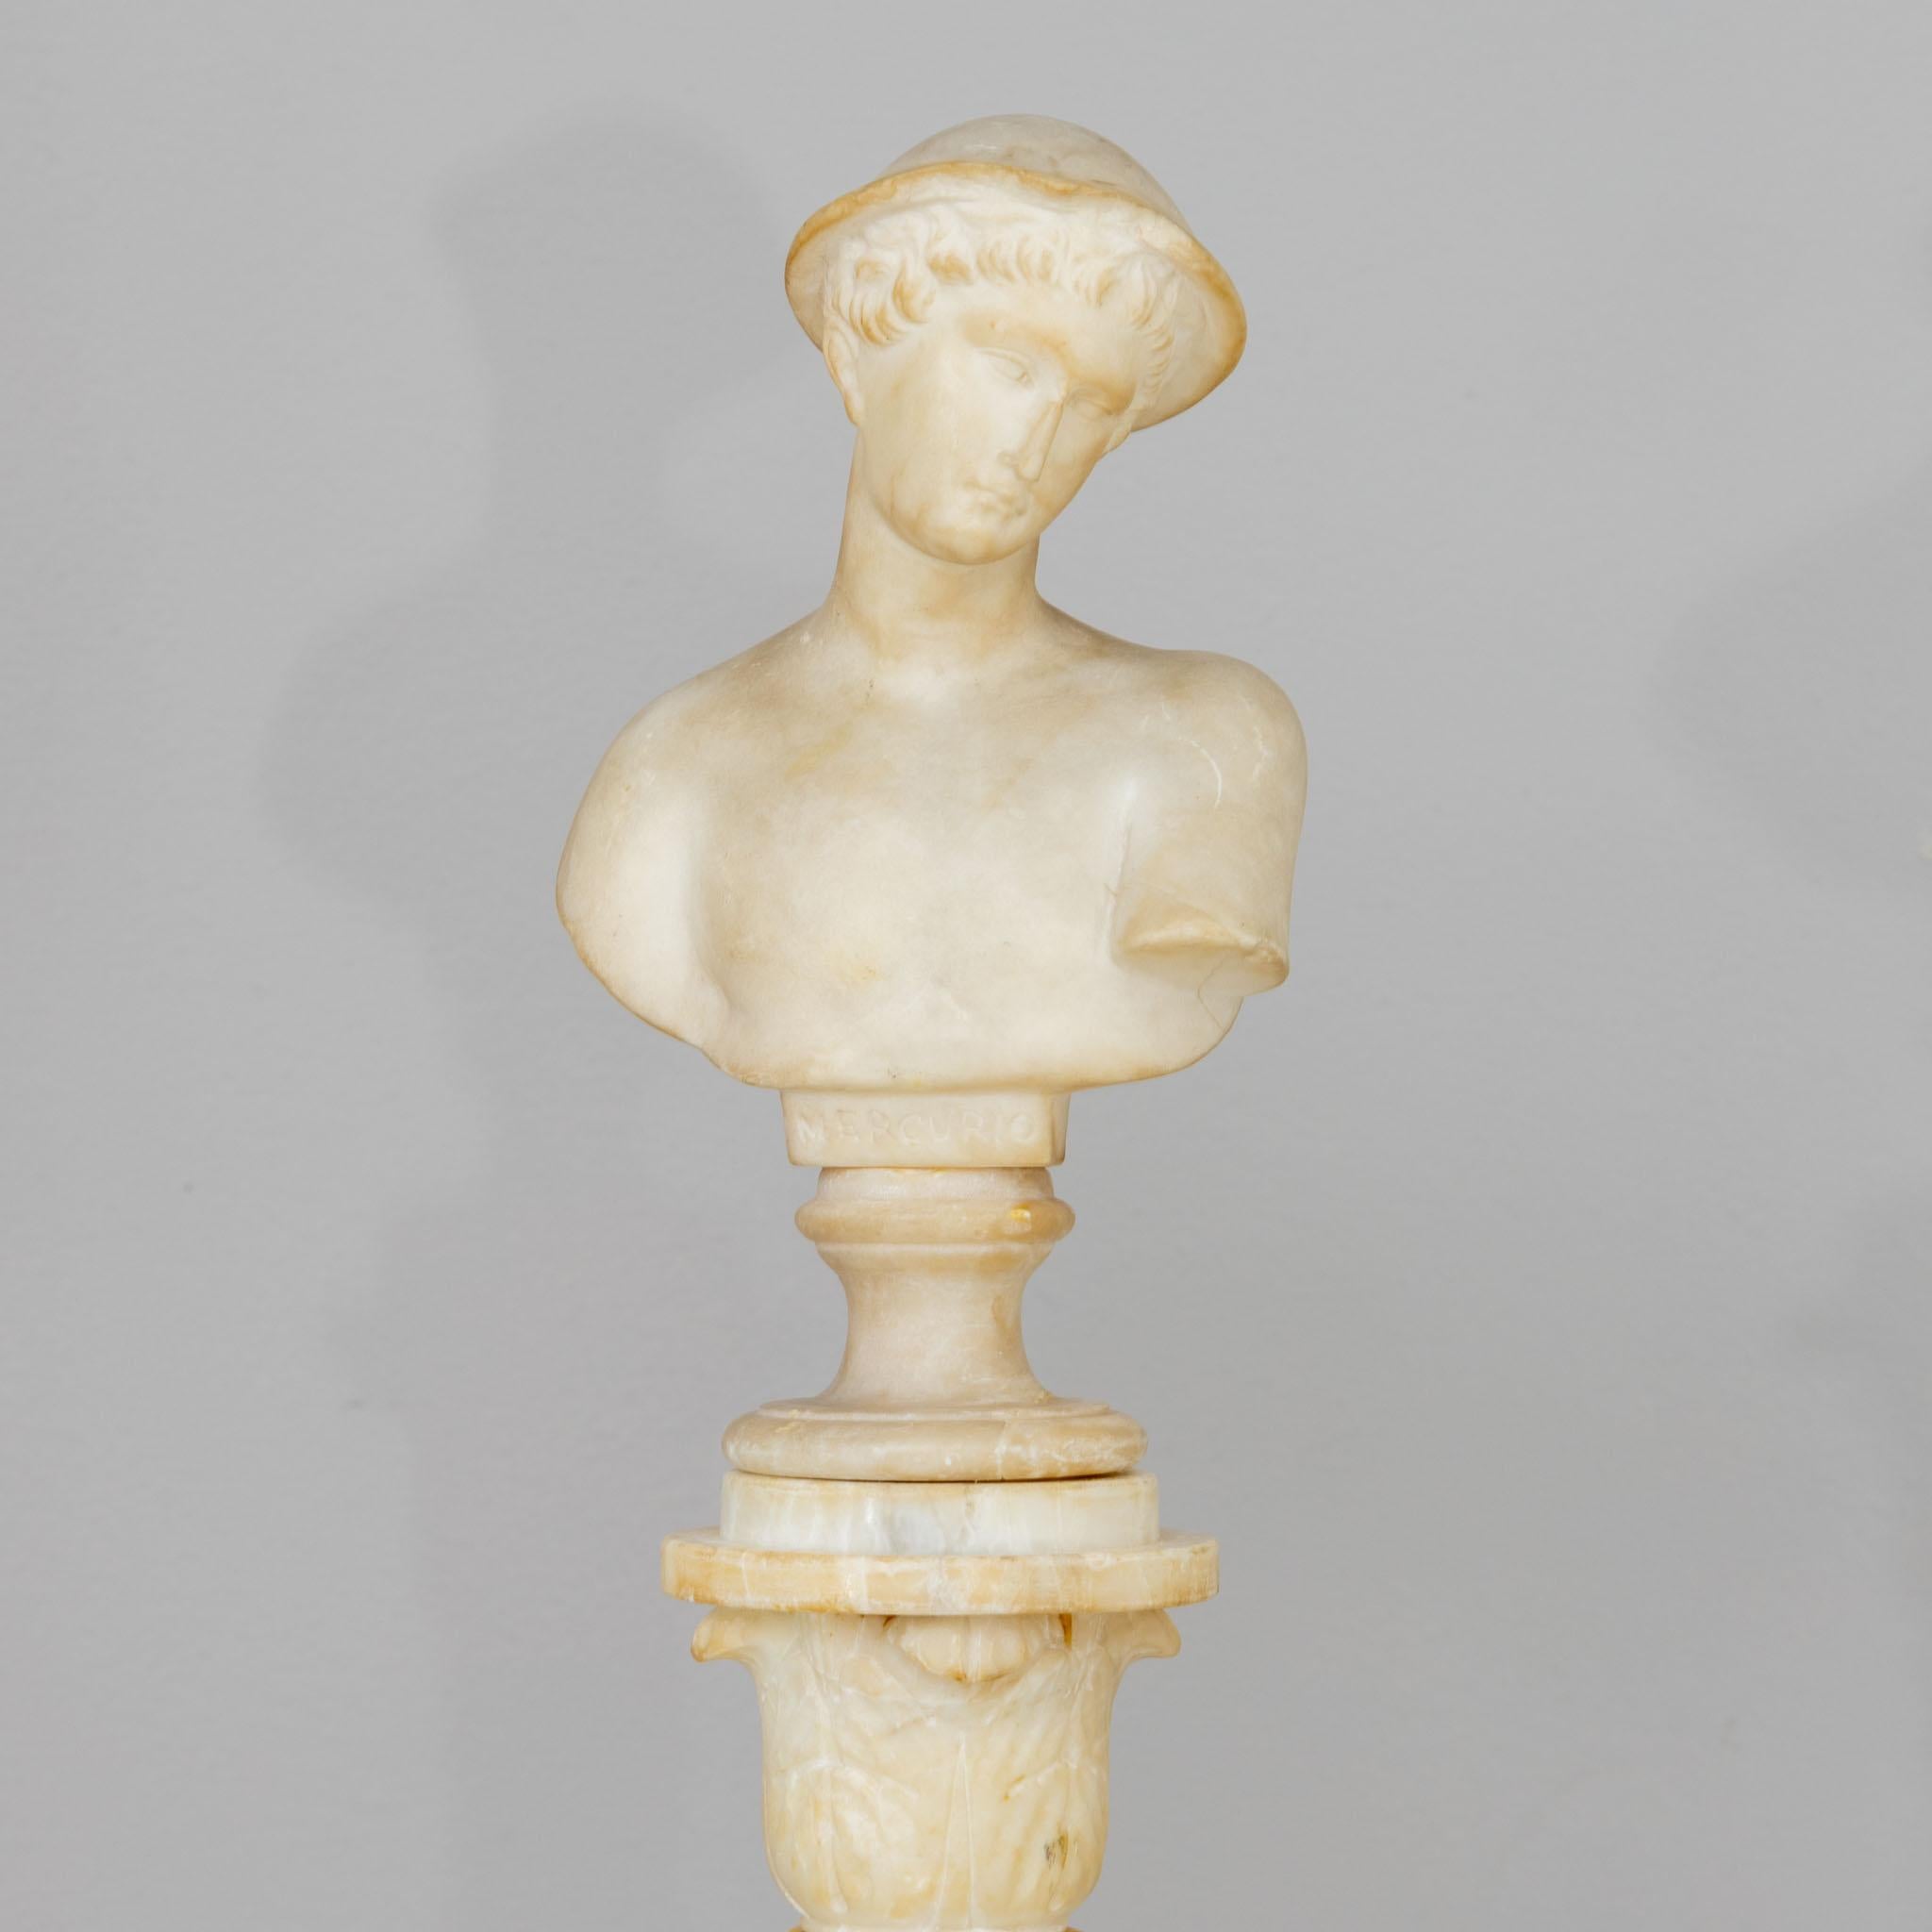 Mariage Grand Tour en albâtre avec le buste de Mercure (inscrit Mercurio) monté sur une colonne torsadée avec un chapiteau feuillagé et une base carrée.